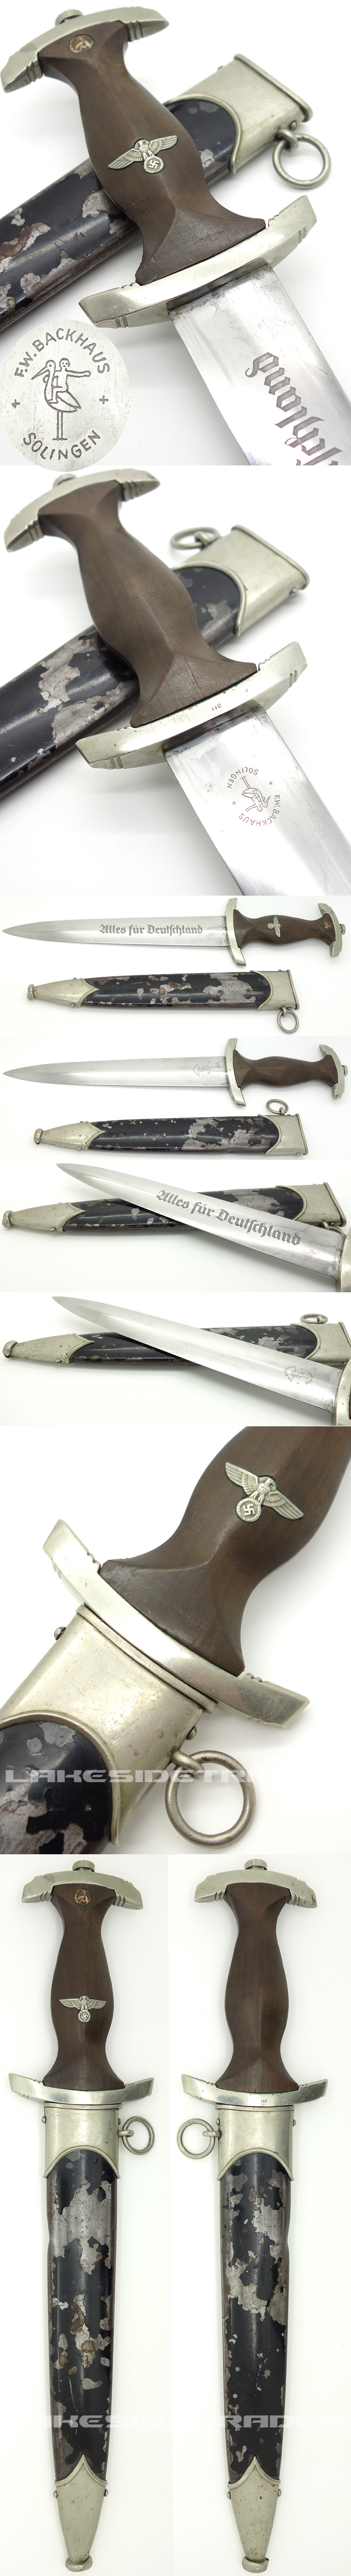 Early NSKK Dagger by F. W. Backhaus